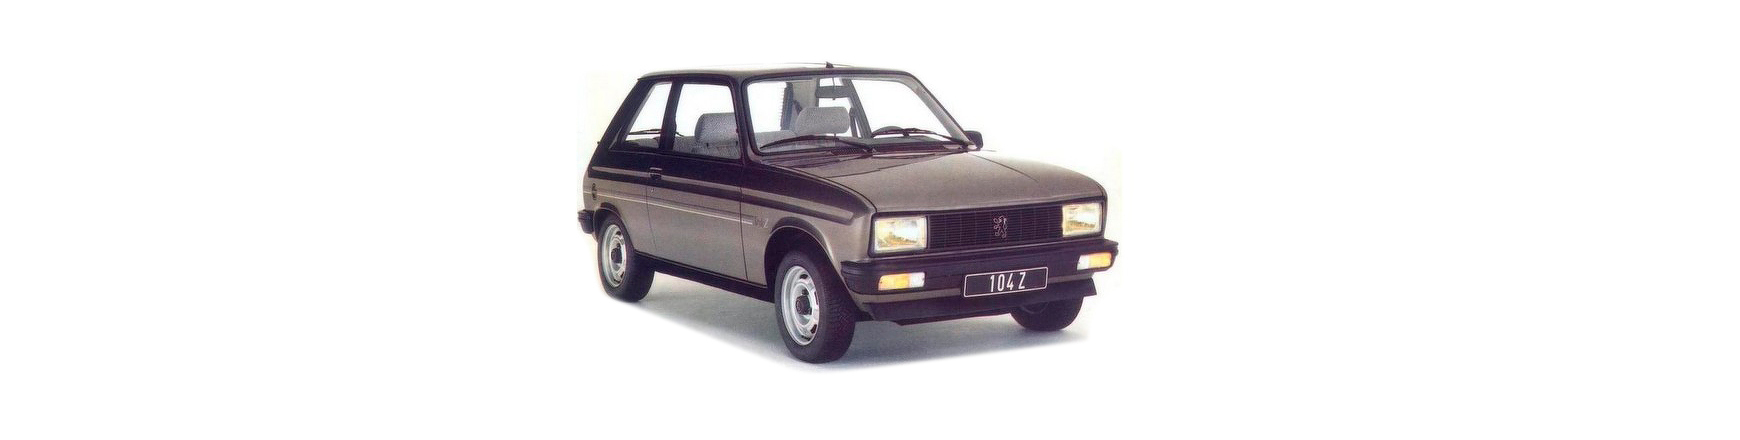 Piezas y Recambios de Peugeot 104 (X) de 1972 a 1988 | Veramauto.es